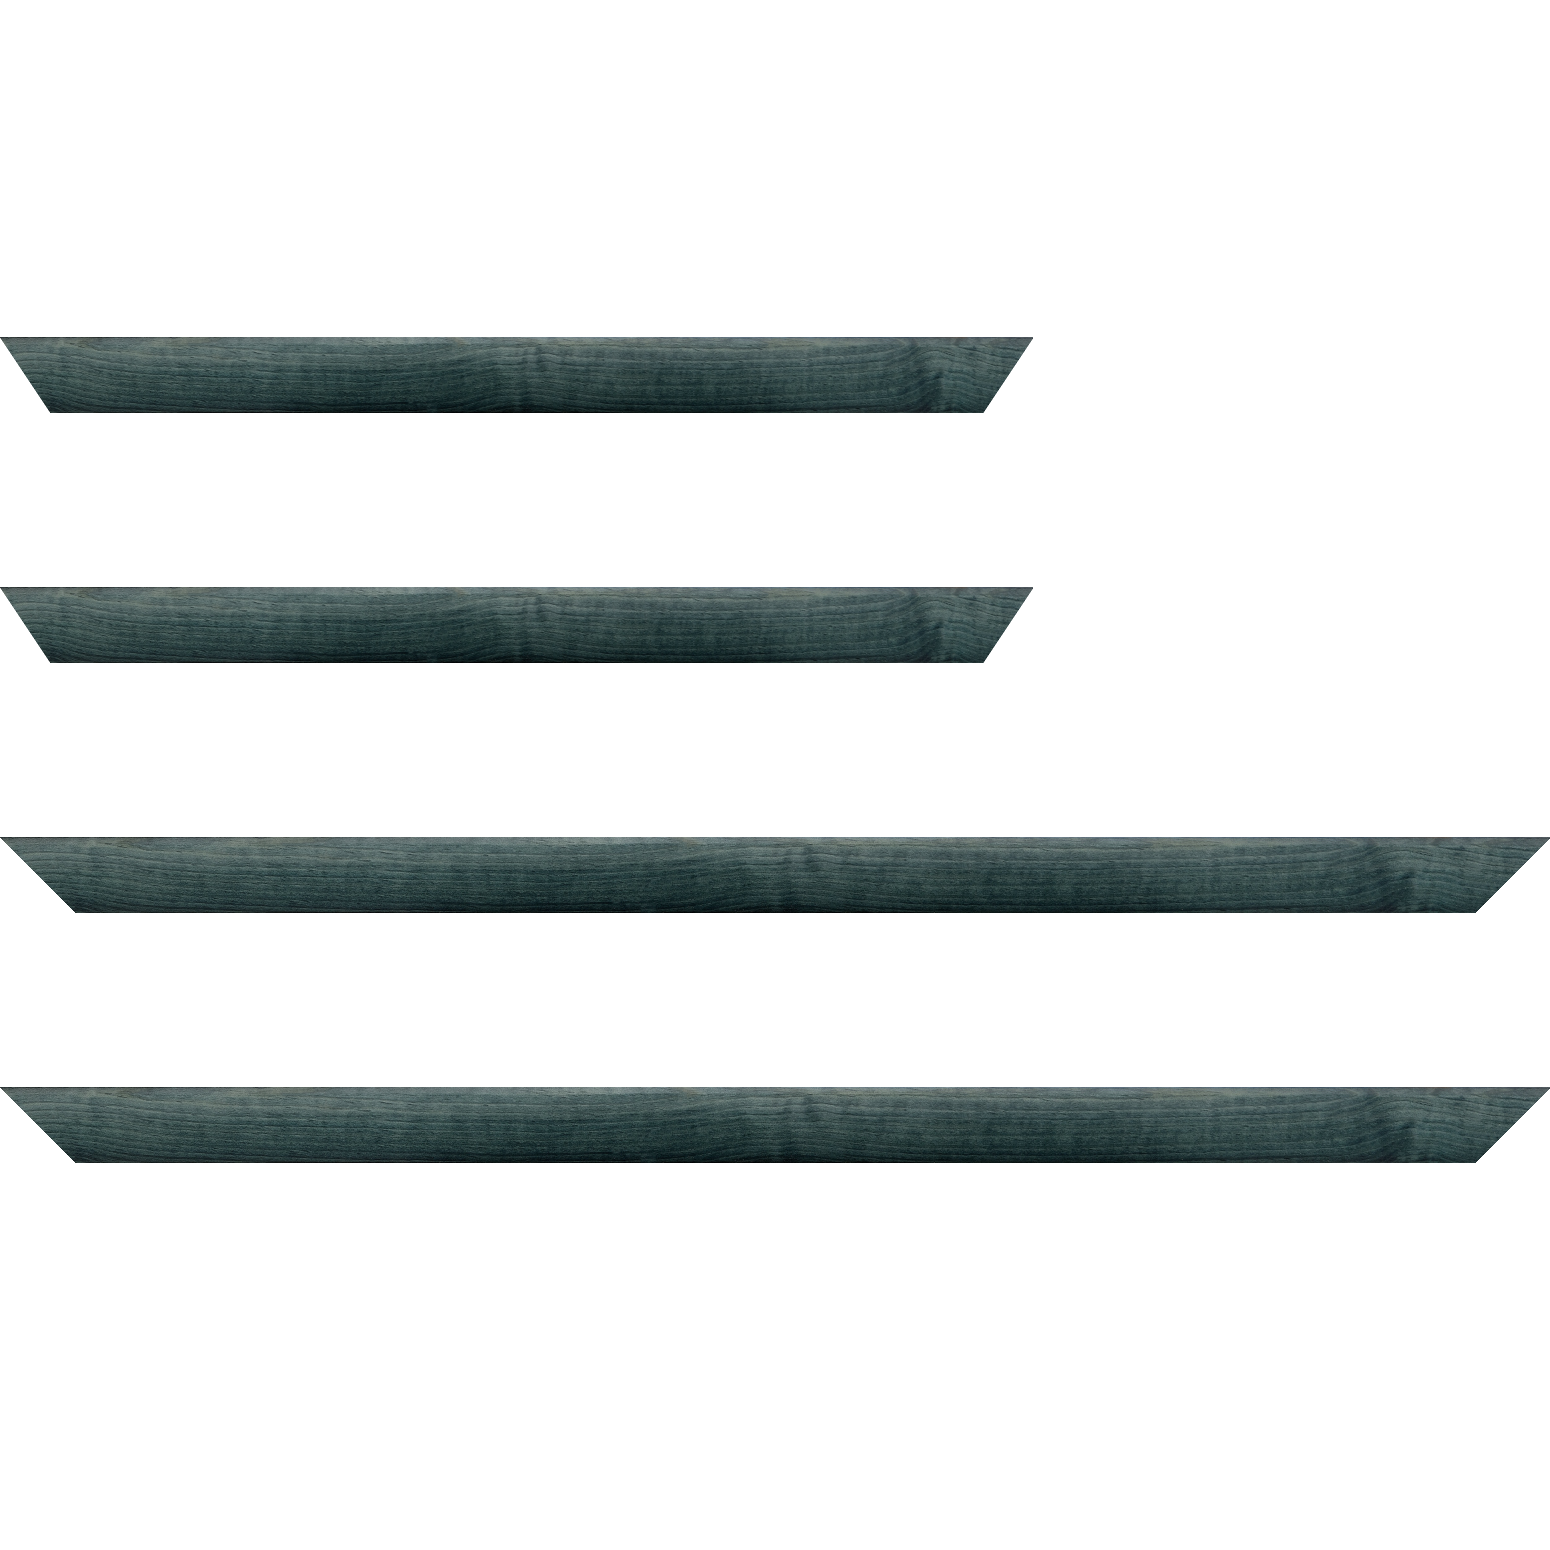 Baguette bois profil arrondi en pente plongeant largeur 2.4cm couleur bleu turquoise foncé finition vernis brillant,veine du bois  apparent (pin) , - 25x25